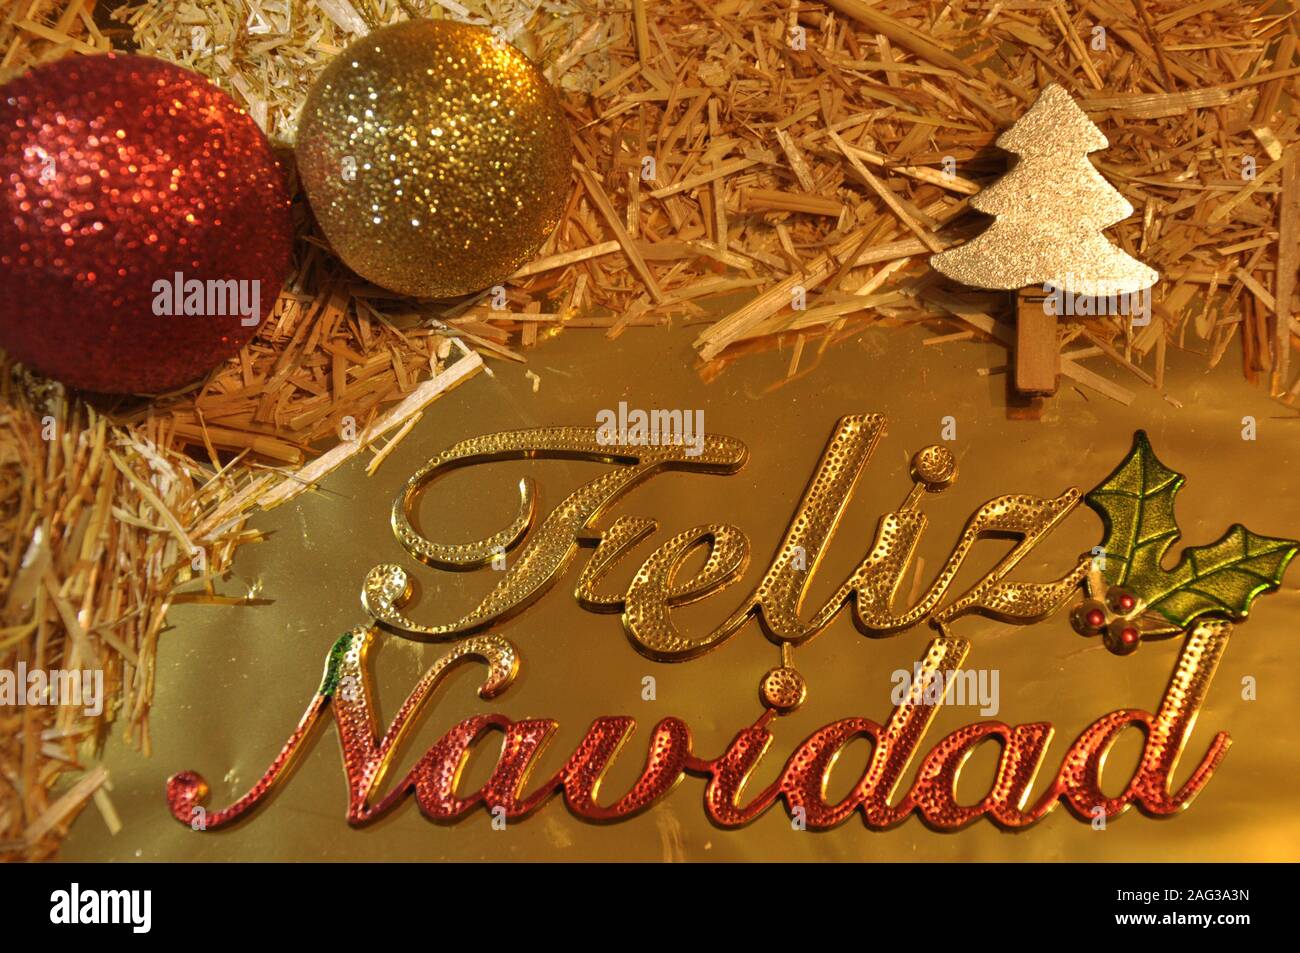 Frohe Weihnachten auf Spanisch lateinische Sprache. Weihnachten gretting Karte. Kugeln, Stroh und goldenen Verzierungen. Stockfoto